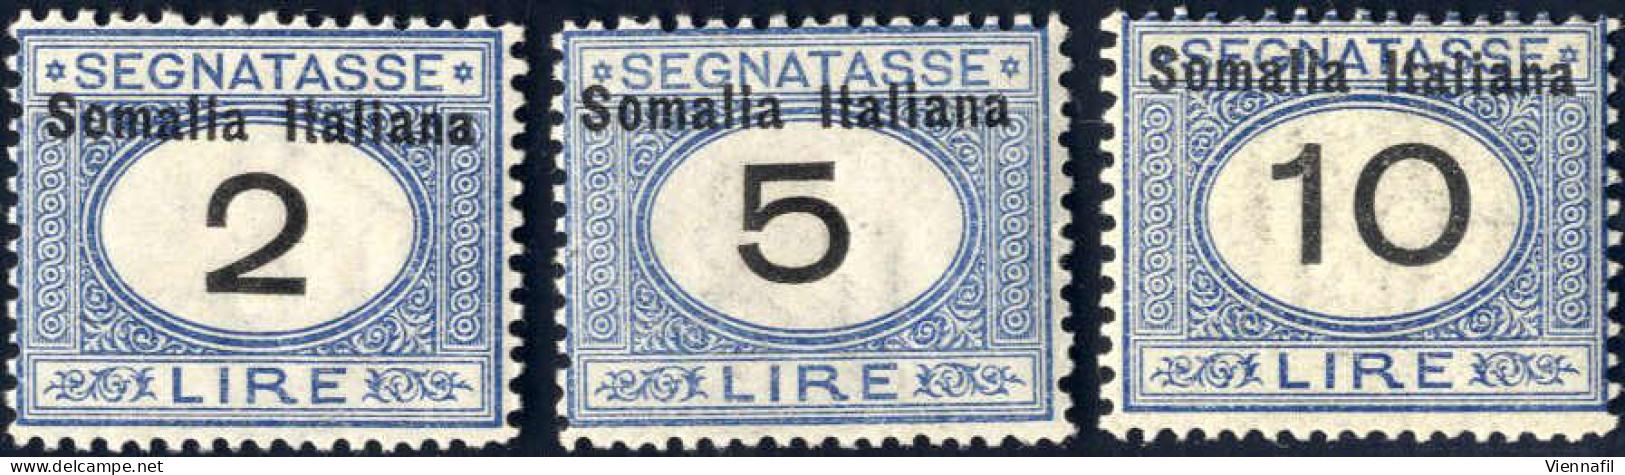 * 1926, Segnatasse D'Italia Con Soprastampa "Somalia Italiana" In Alto E Moneta Italiana, Arancio E Nero E Azzurro E Ner - Somalie